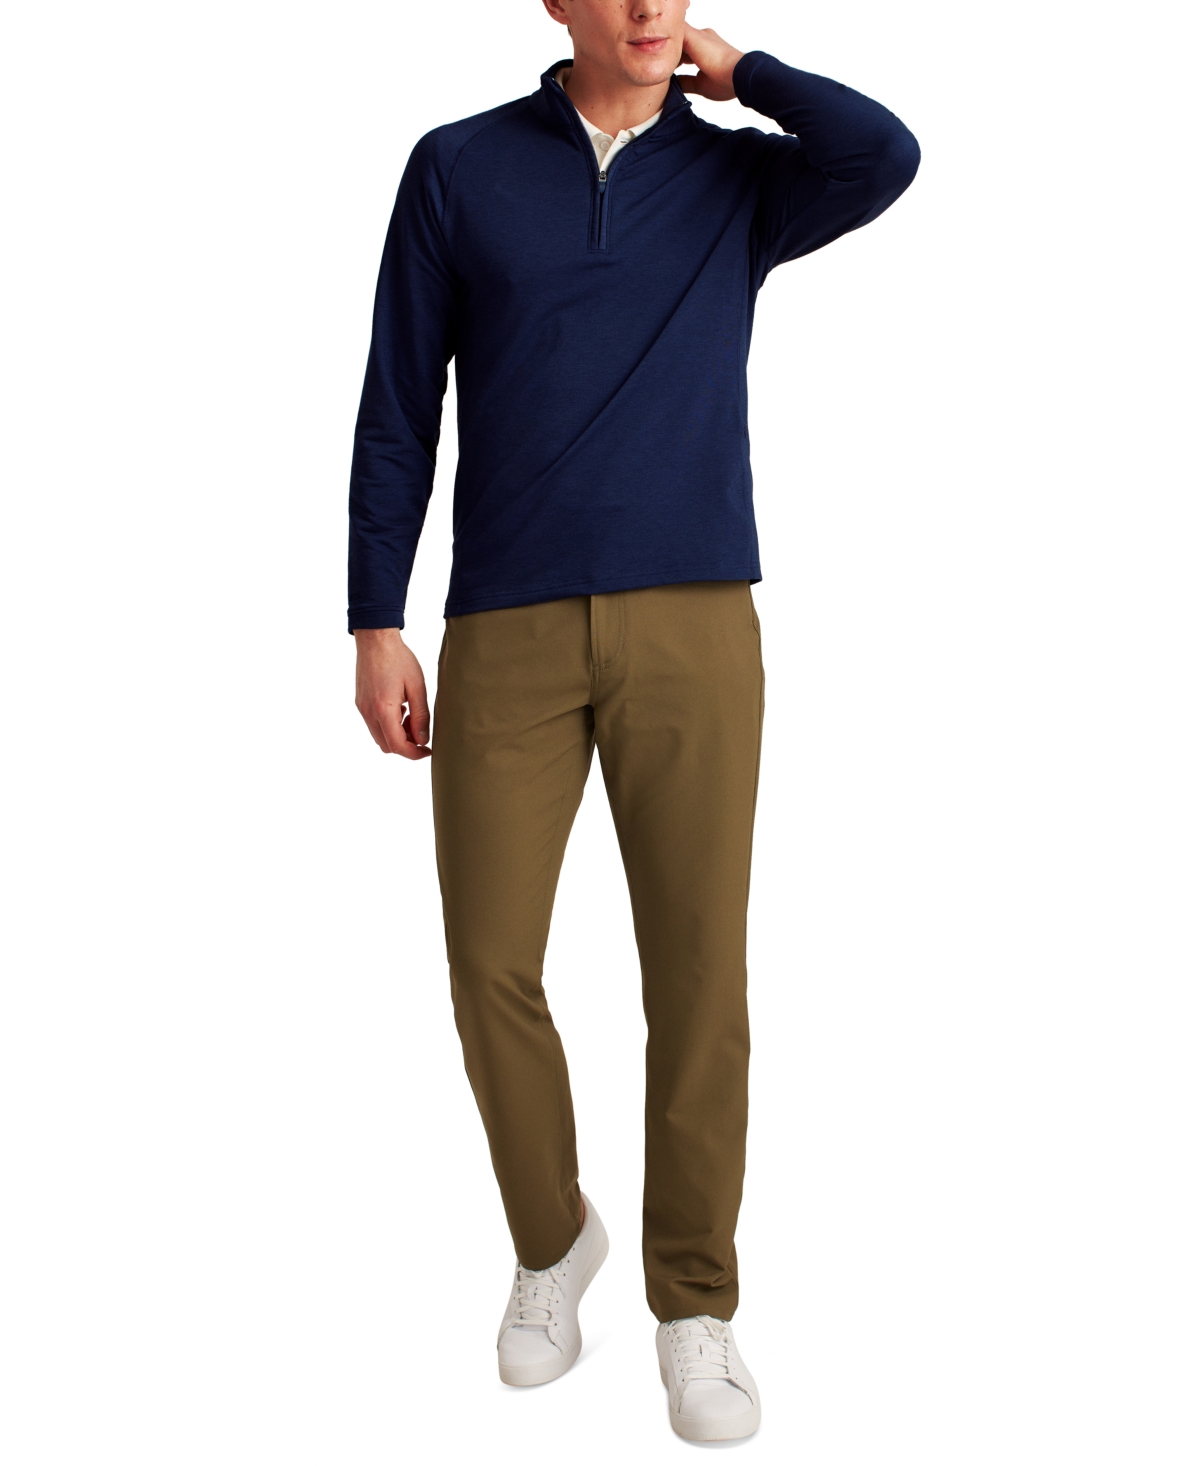 Men's Long Sleeve Half-Zip Pullover Sweatshirt - Navy